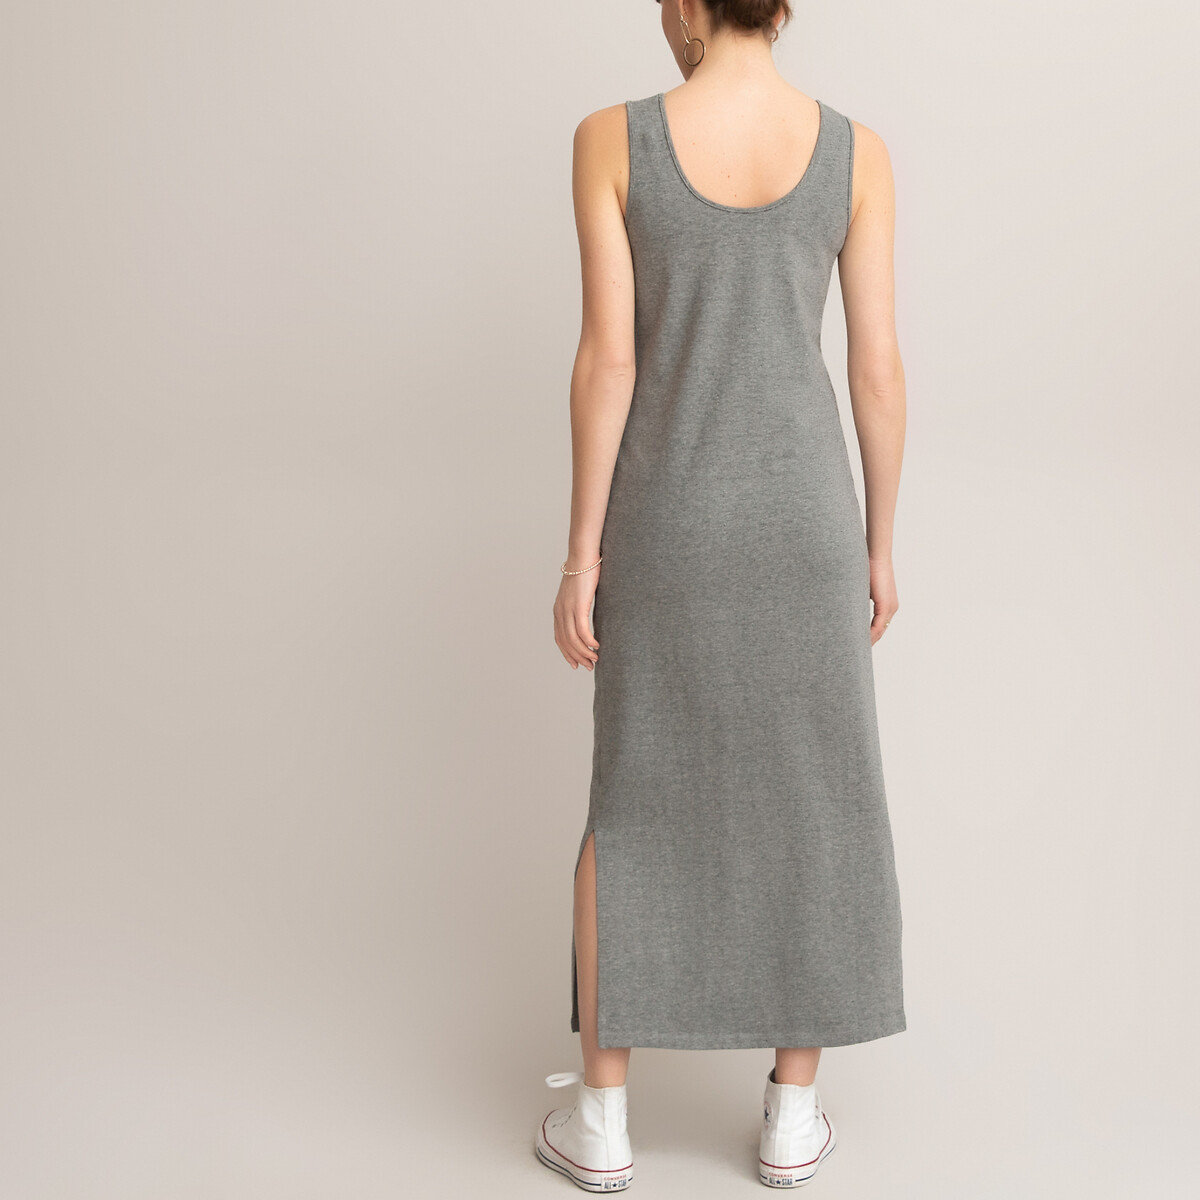 Платье-топ LaRedoute Для периода беременности длинное из трикотажа XL серый, размер XL - фото 4